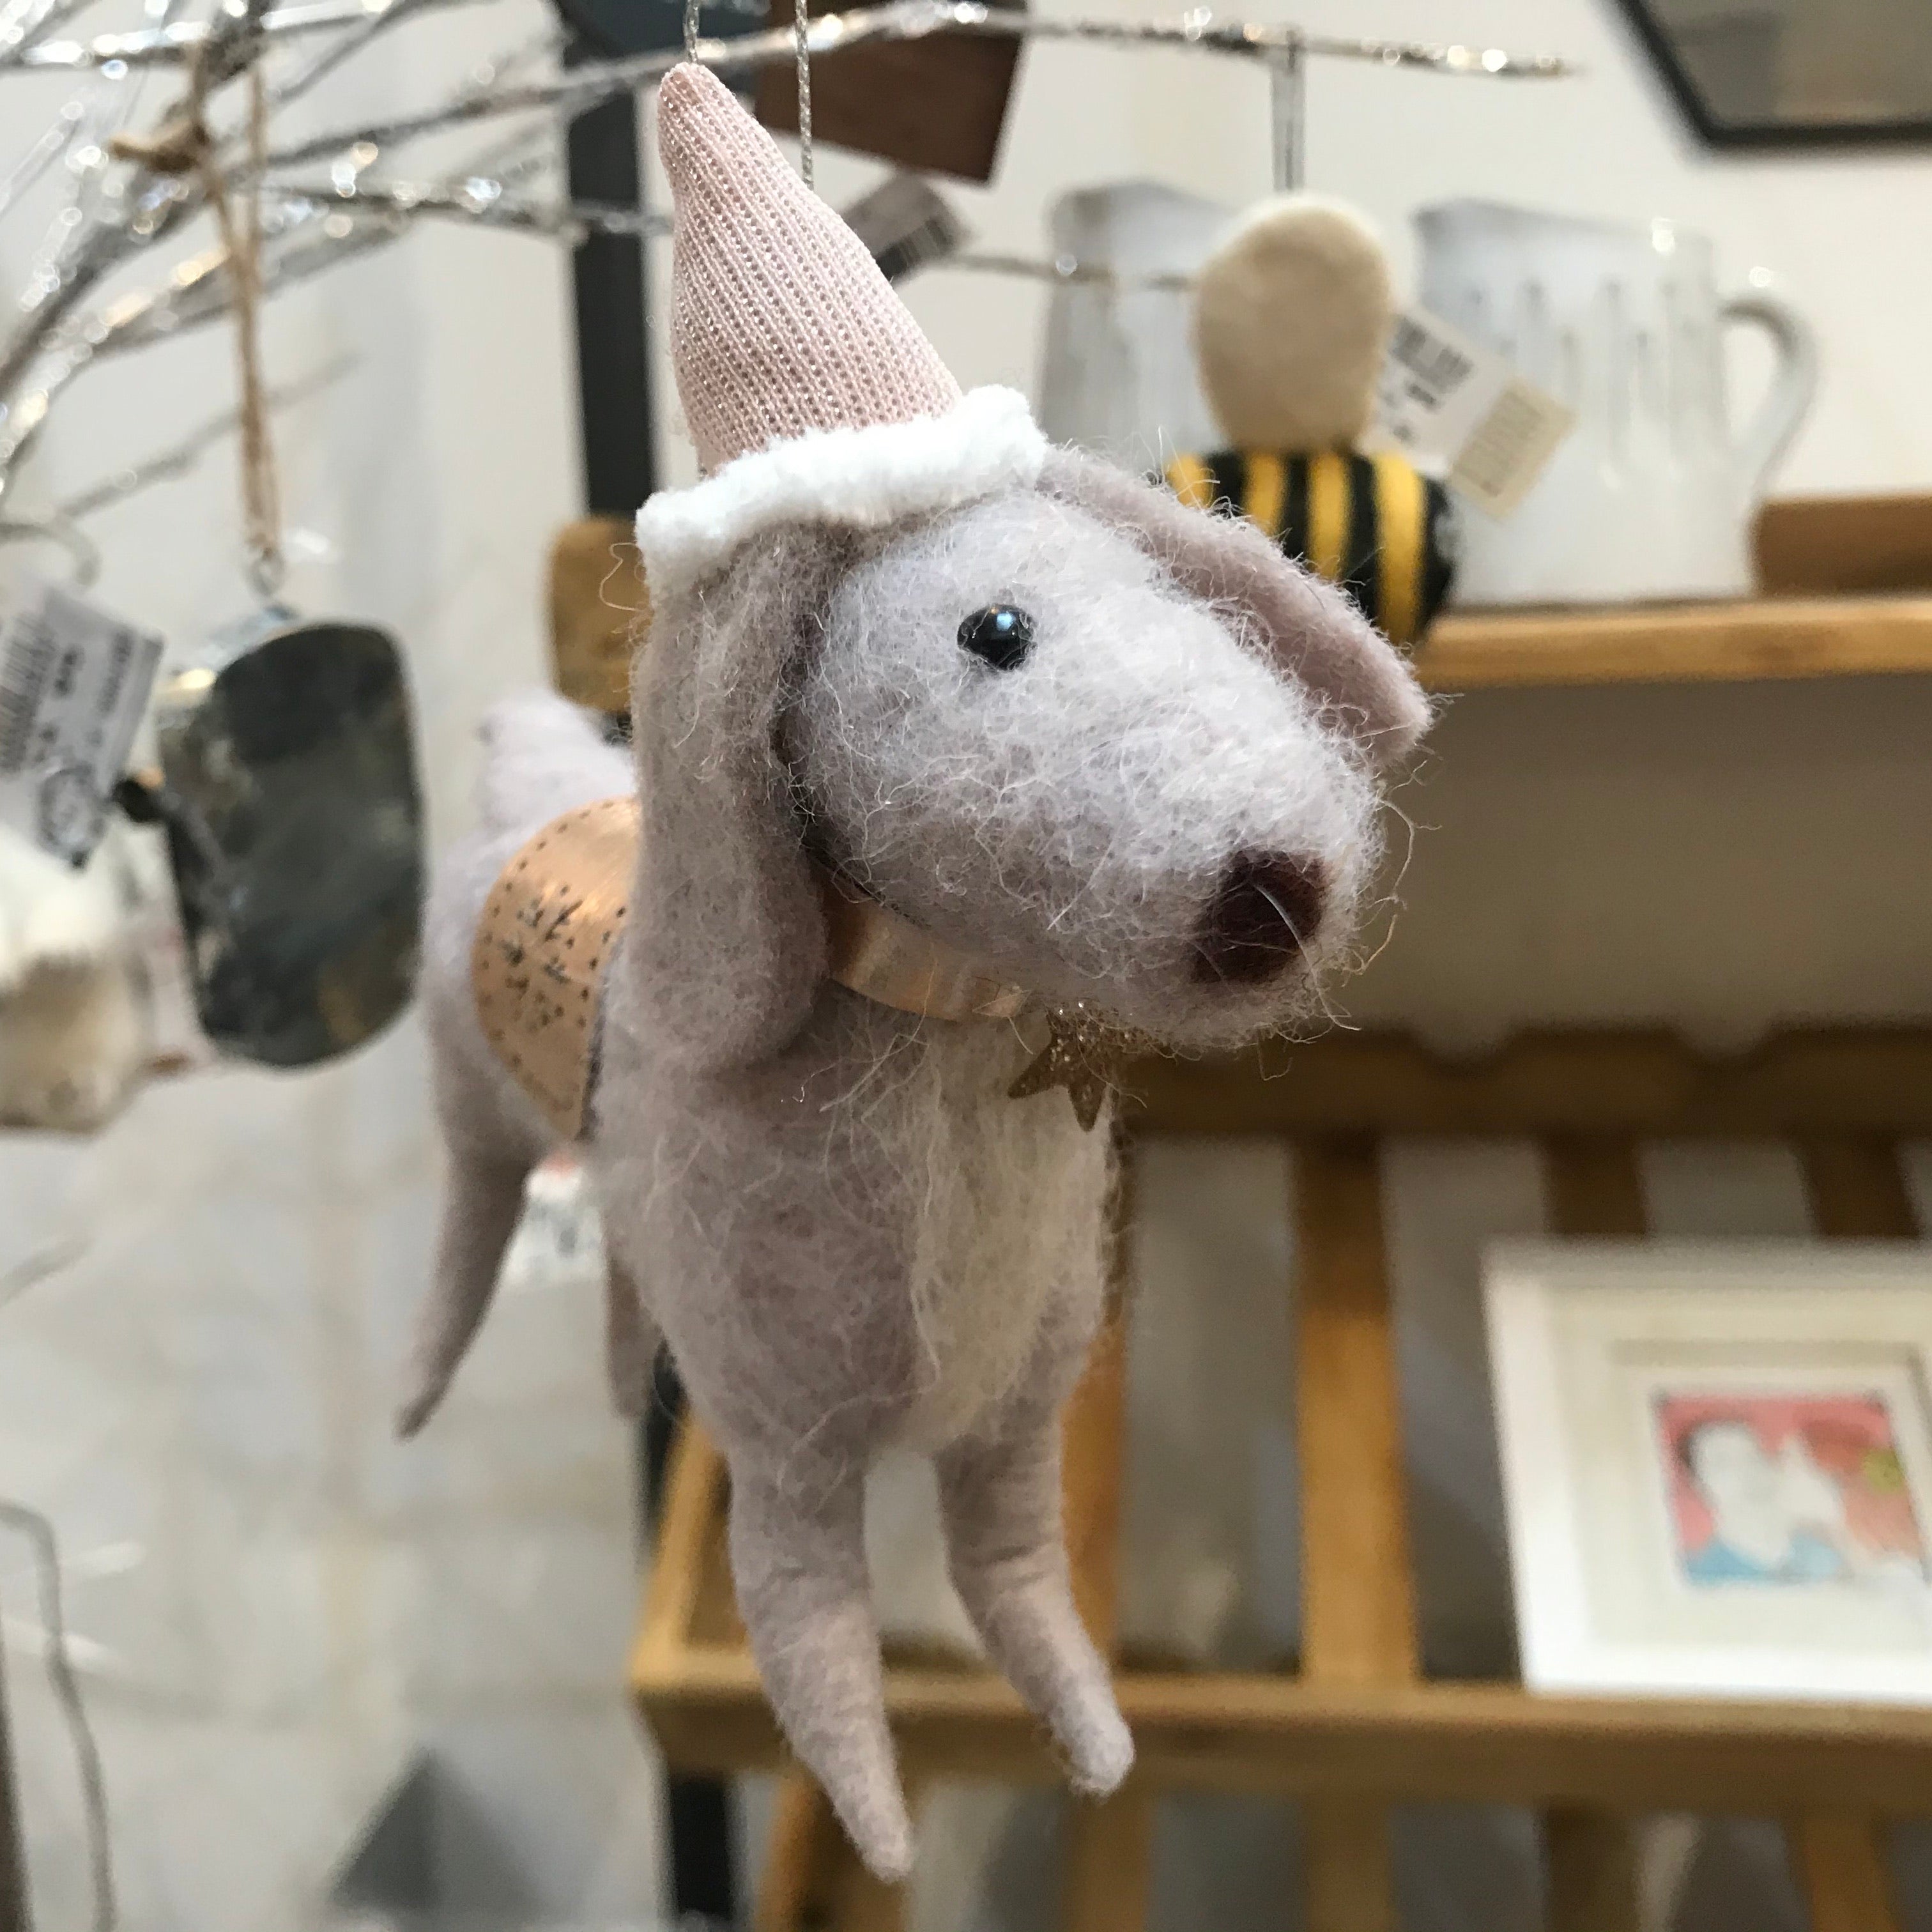 Felt Hanging Dog - The Nancy Smillie Shop - Art, Jewellery & Designer Gifts Glasgow